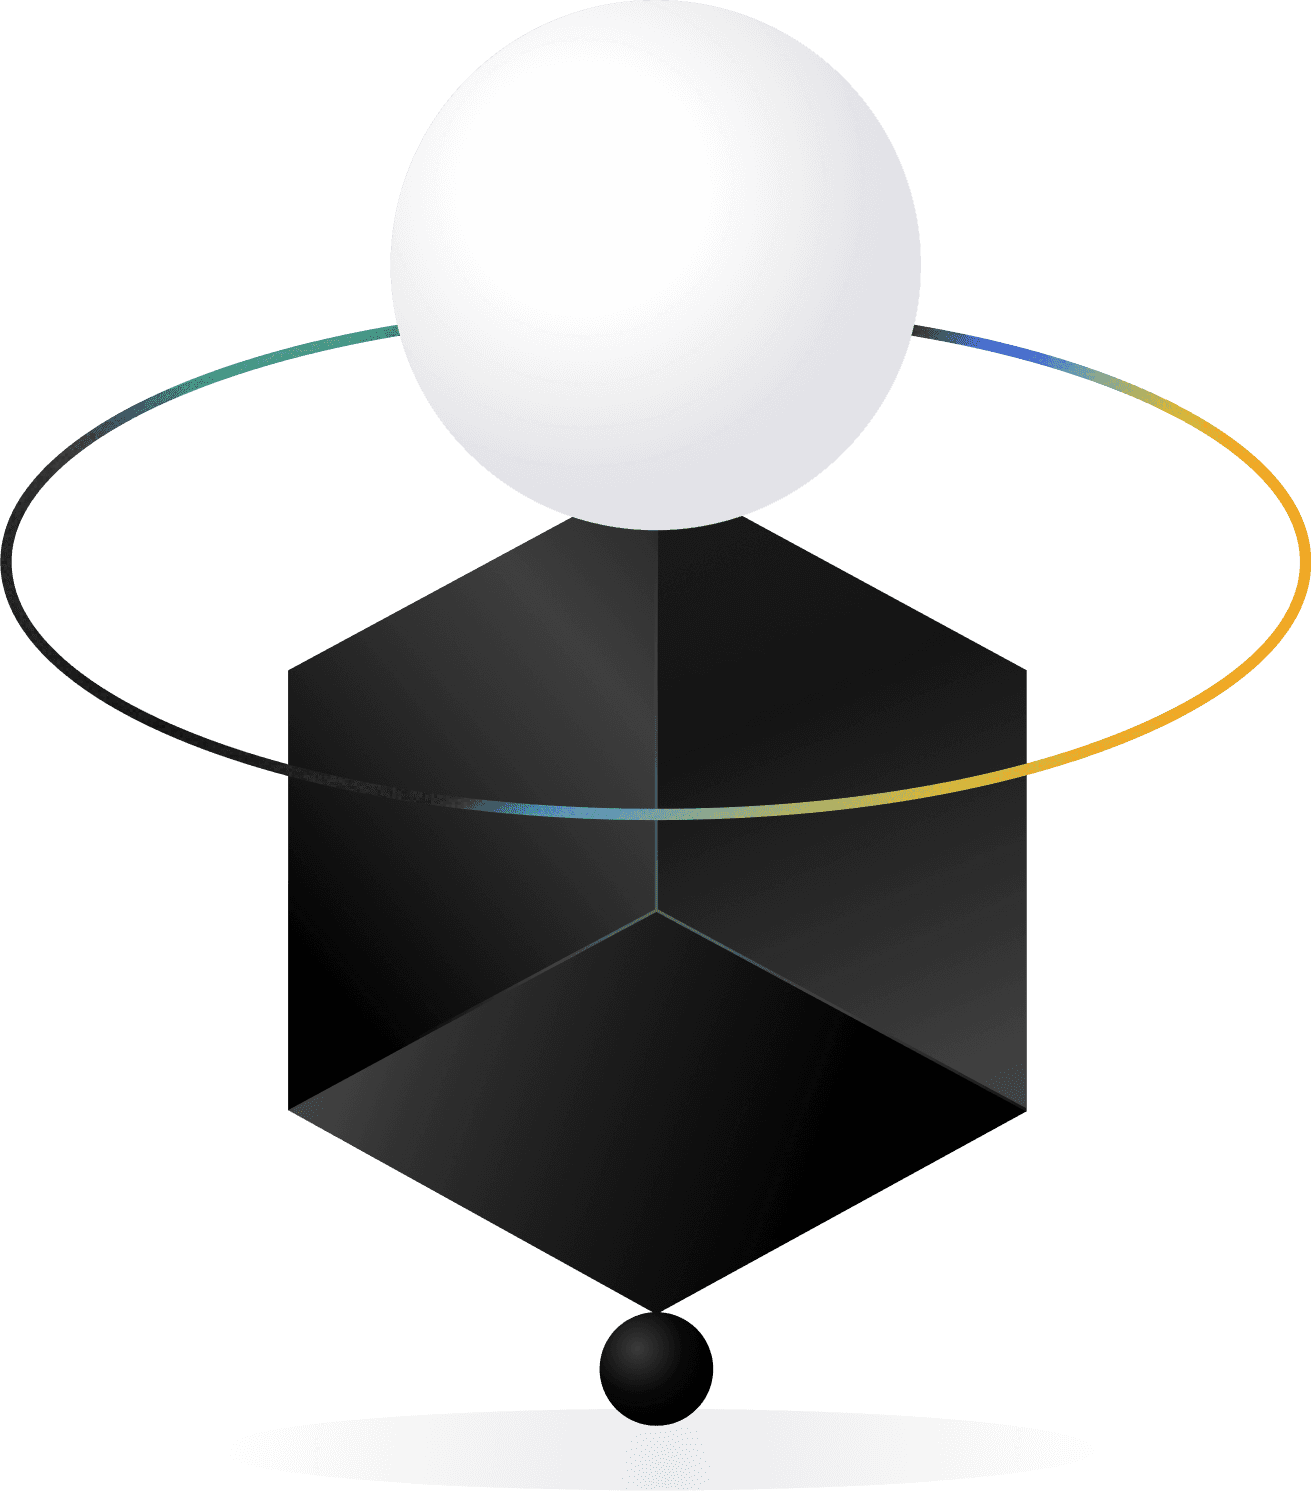 Grafica astratta con cubo scuro e sfera chiara per spezzare un caso di studio UX.